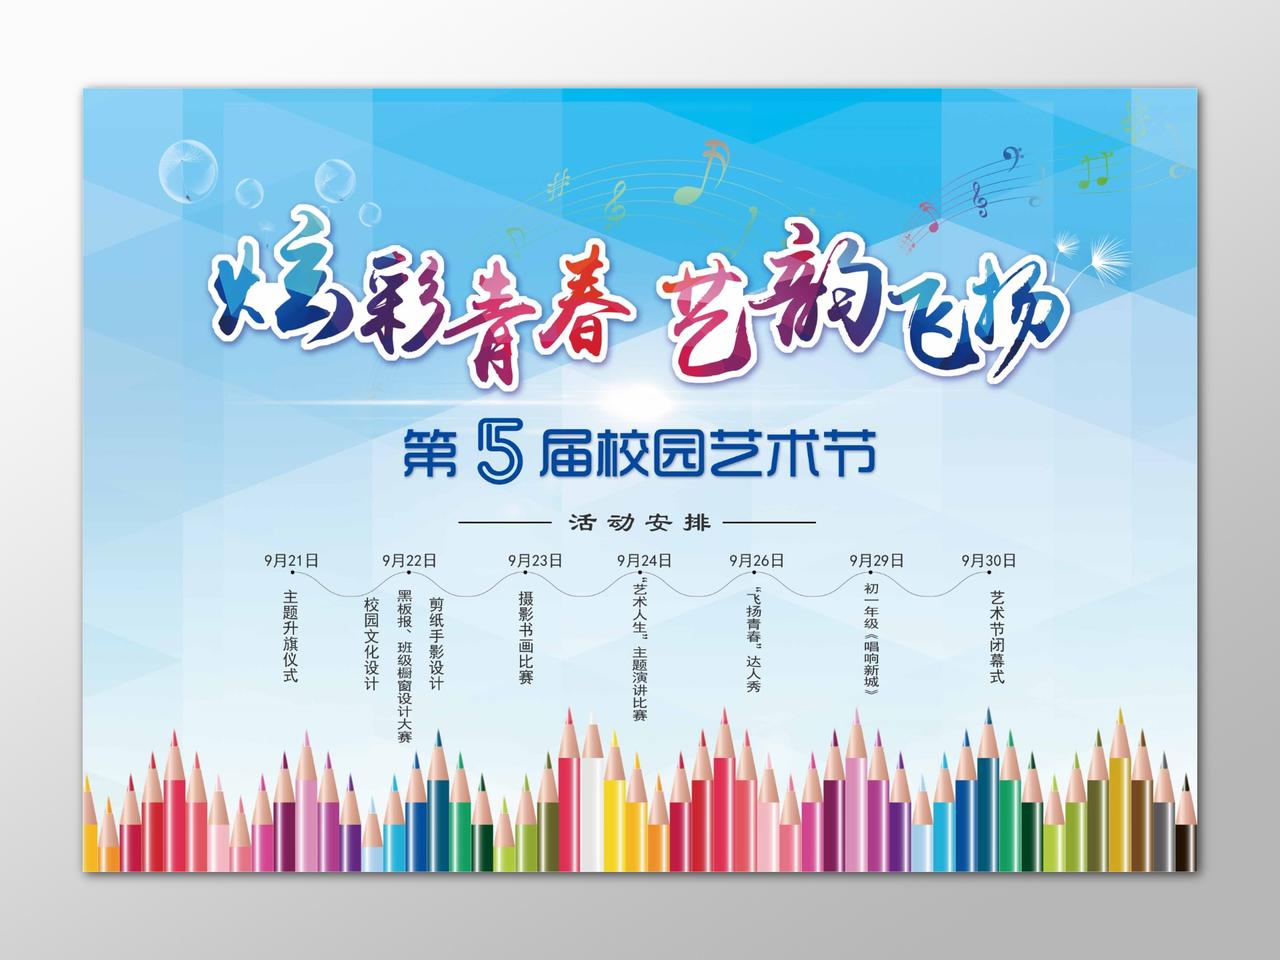 炫彩青春艺韵飞扬校园艺术节寝室文化节活动安排五彩海报设计